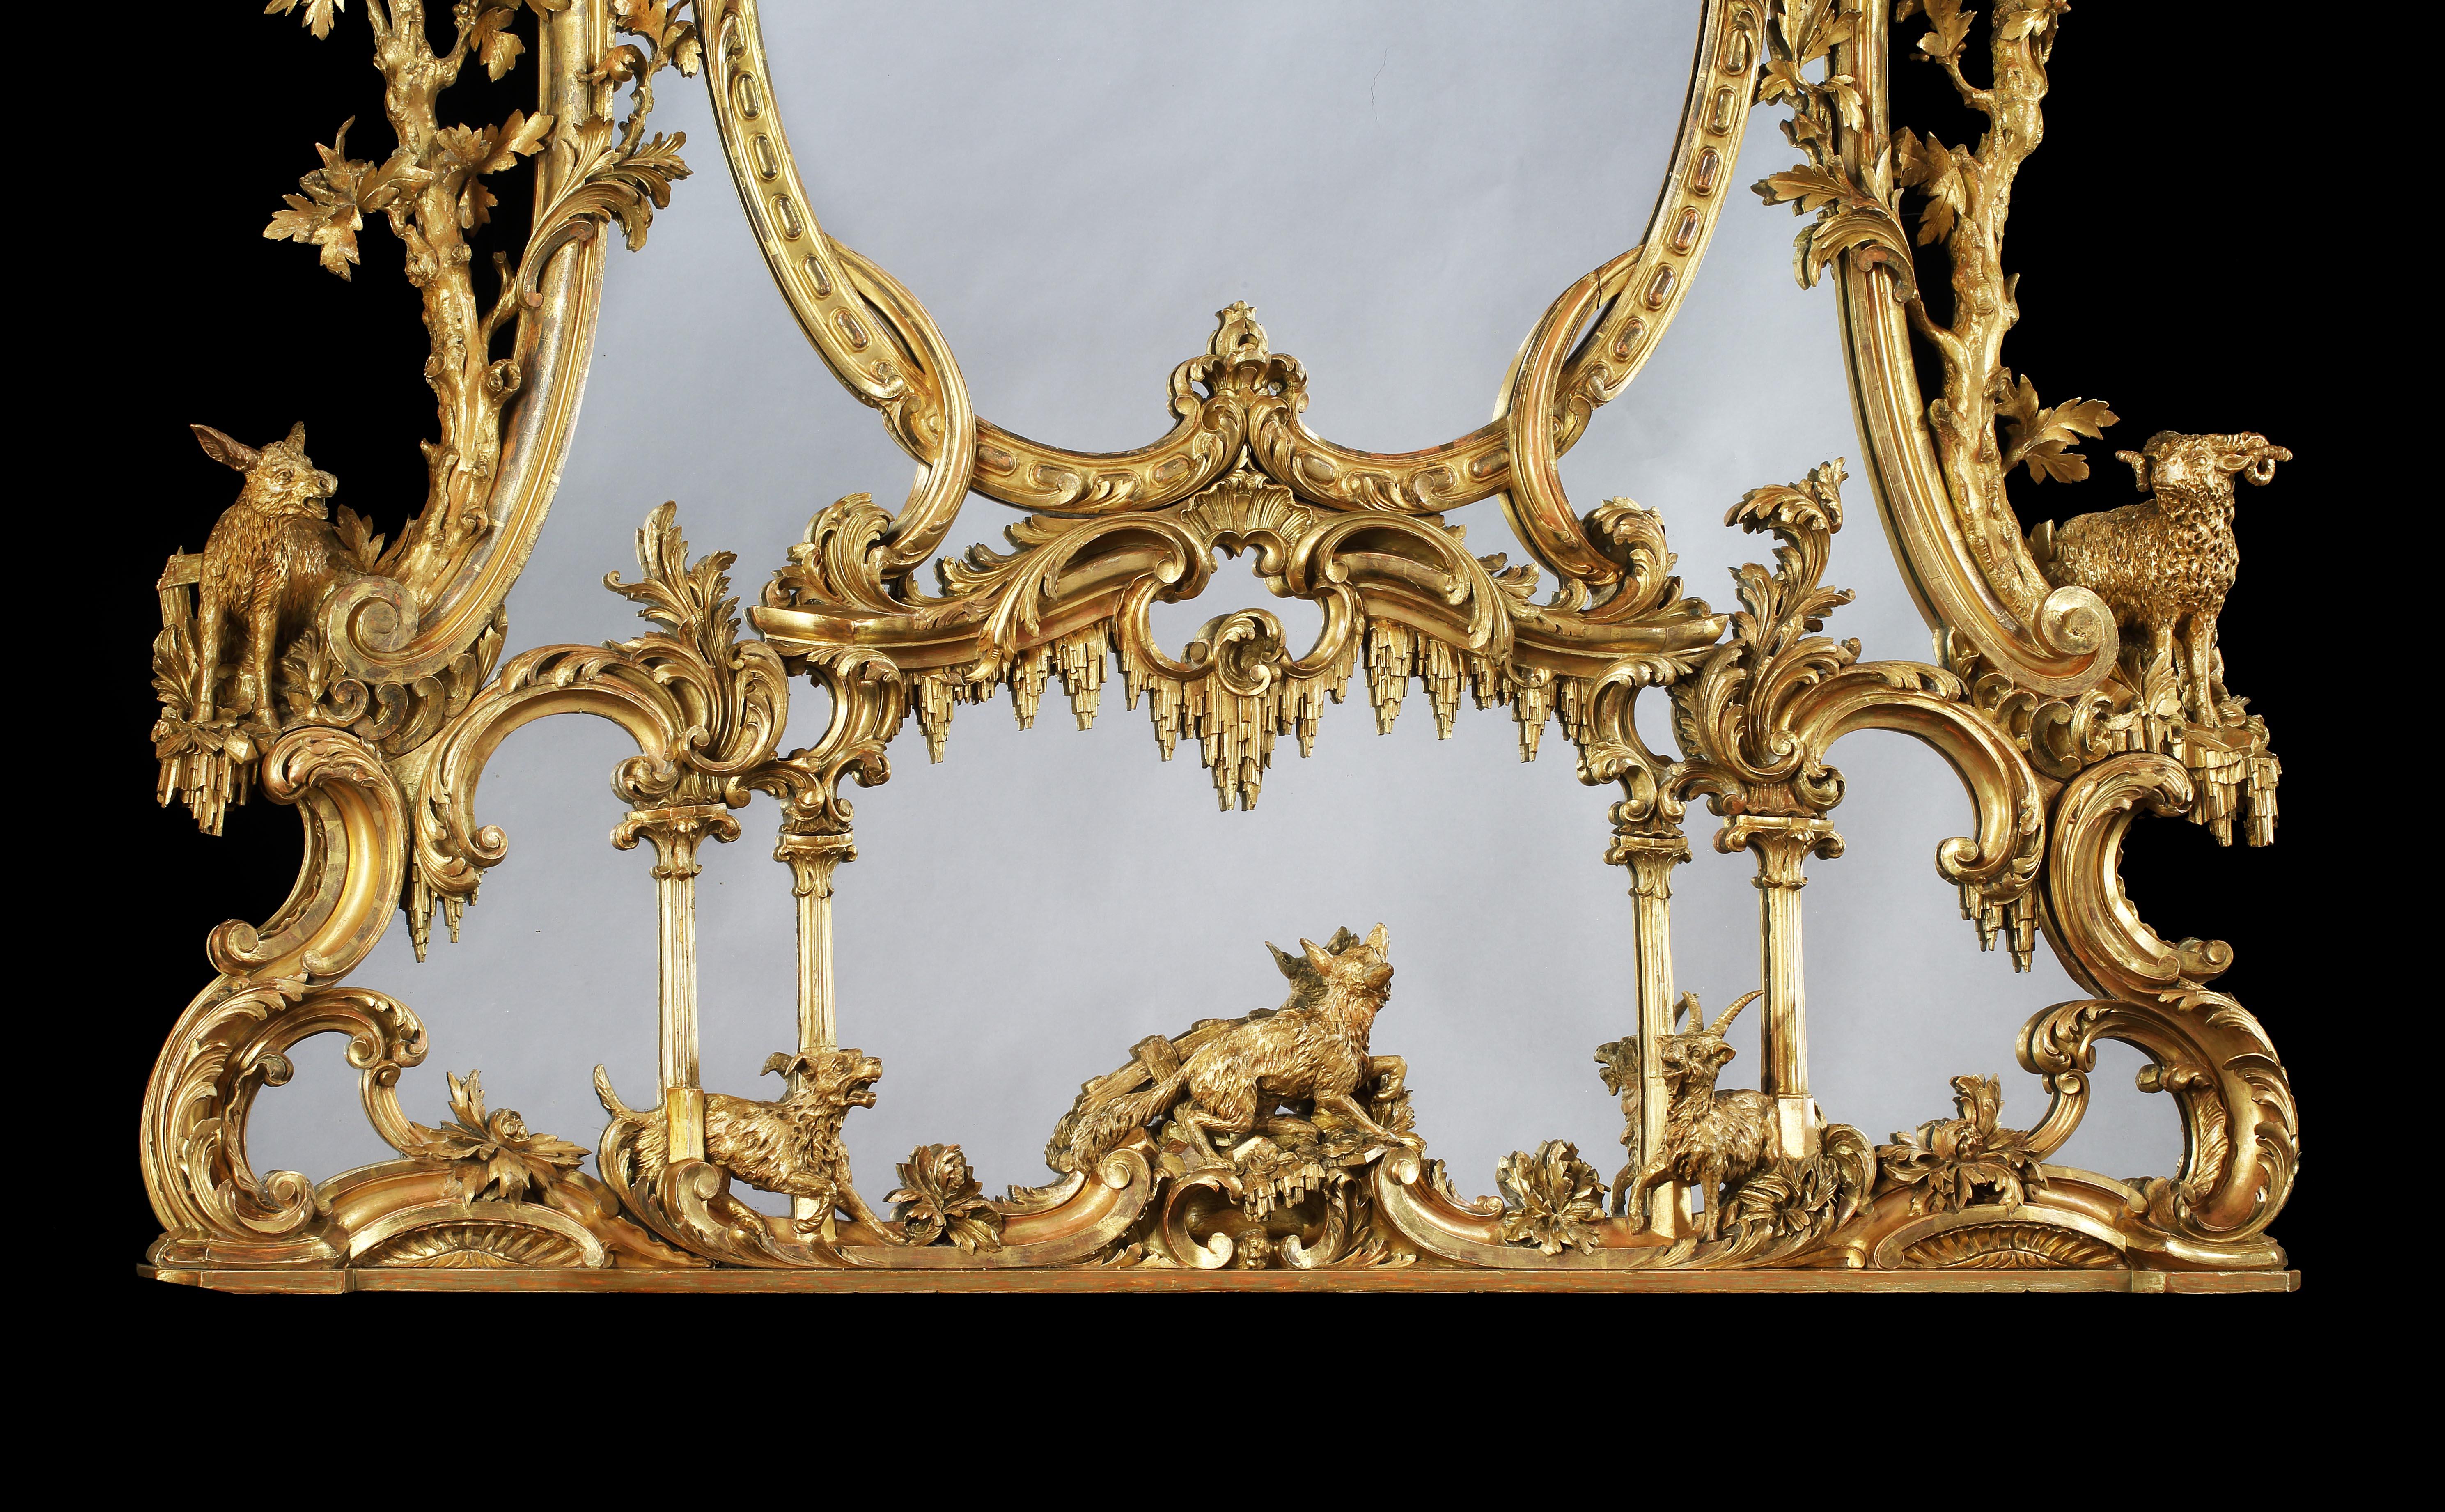 Ein geschnitzter Spiegel aus Goldholz im Stil von George III.
Nach einem Entwurf von Thomas Johnson

Die zentrale ovale Glasplatte ist in einer konzentrischen Anordnung von Quecksilberplatten aufgebaut, die von einem kunstvoll geschnitzten Rahmen